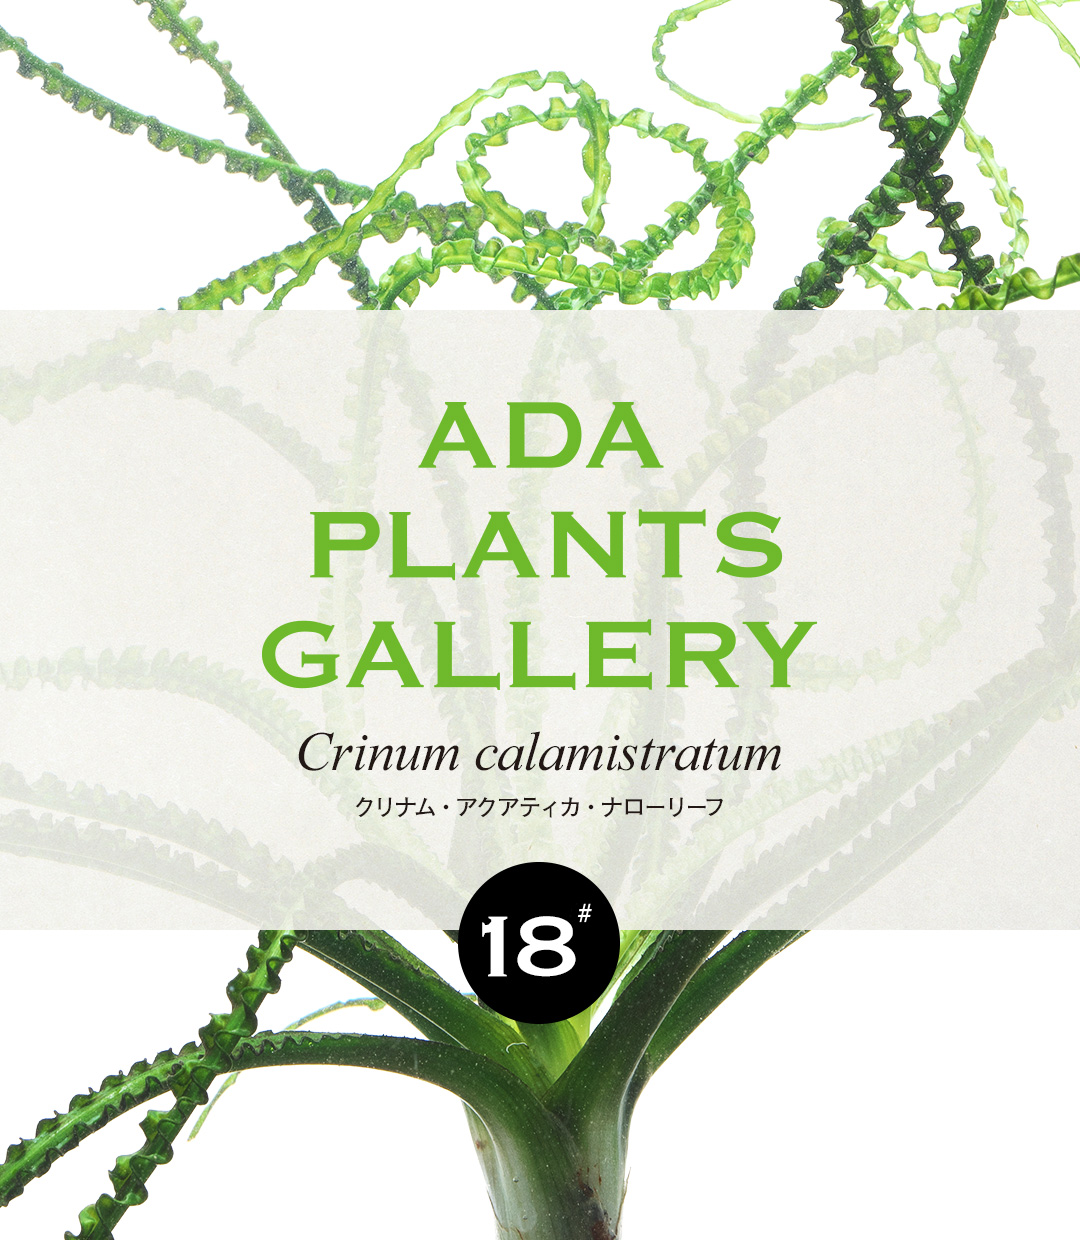 ADA PLANTS GALLERY #18 Crinum calamistratum